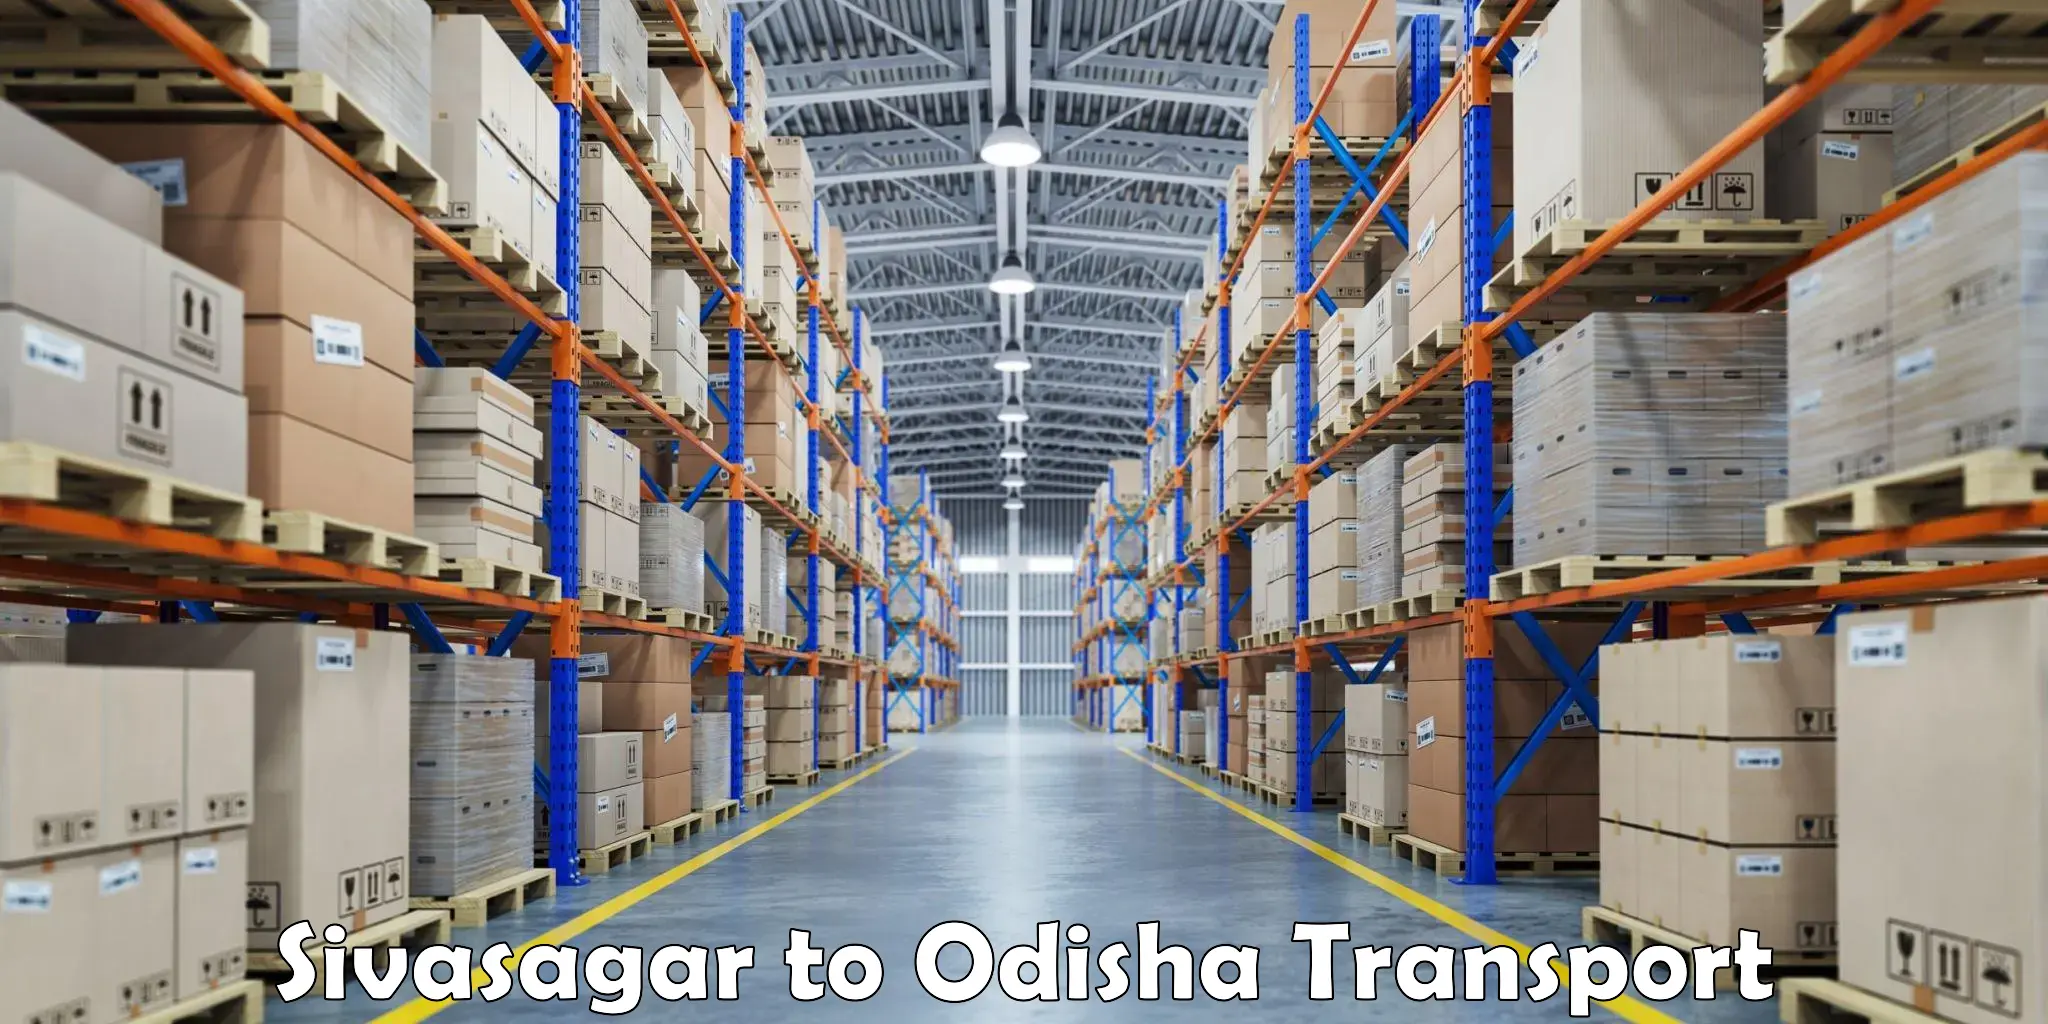 Online transport service Sivasagar to Bhanjanagar